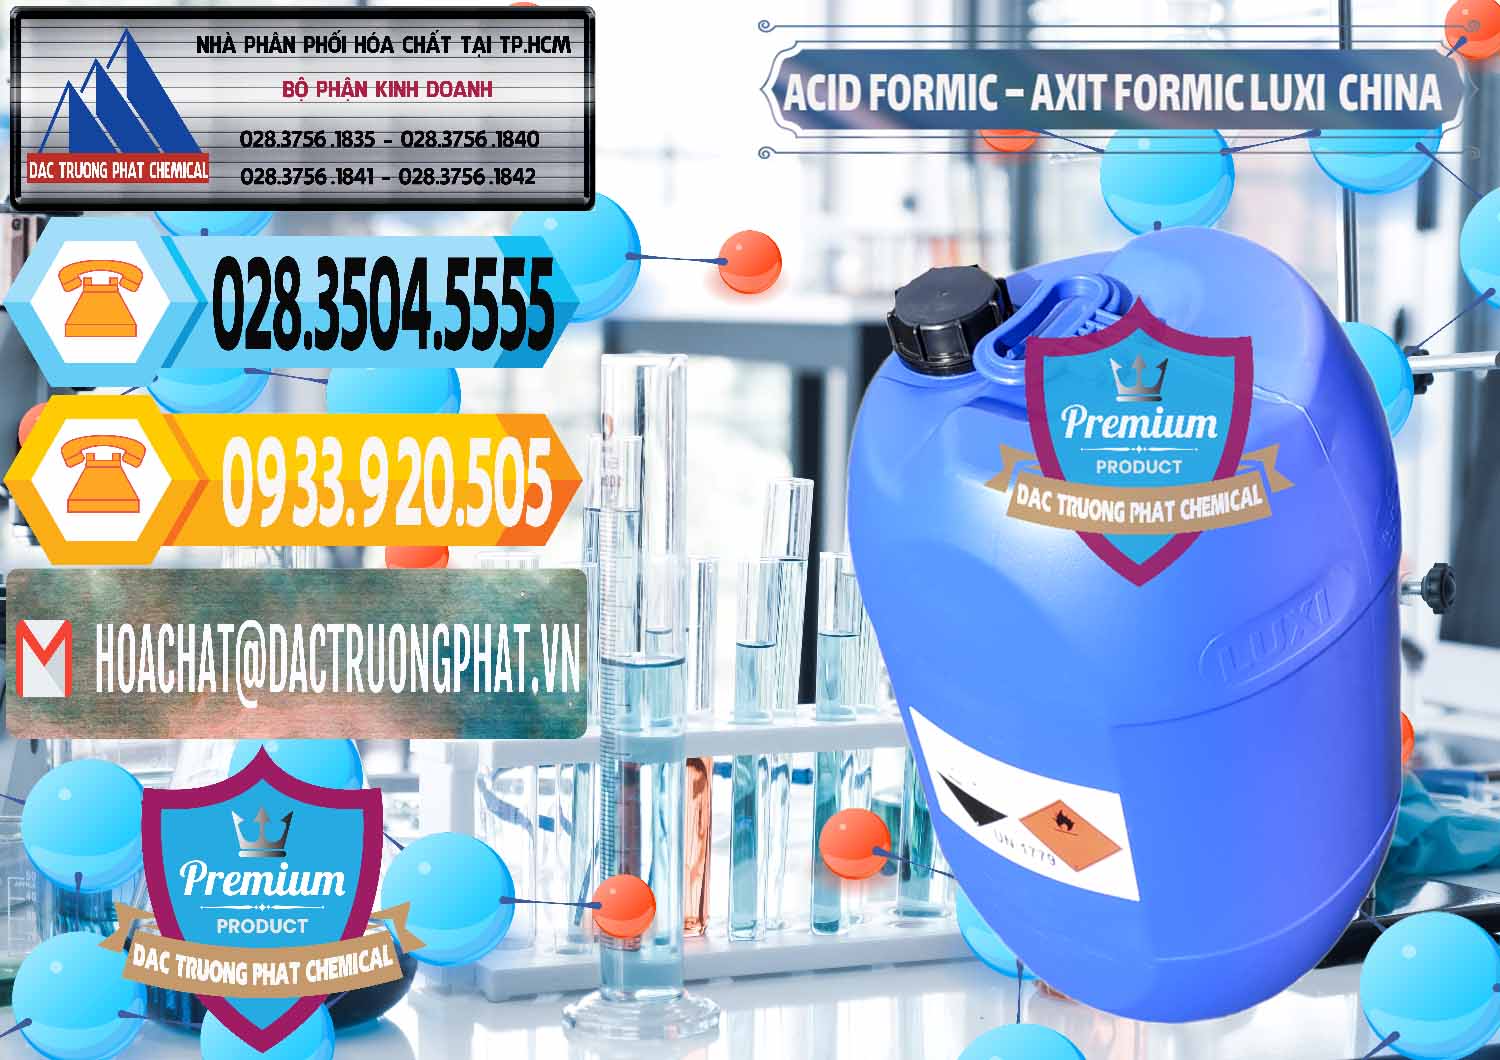 Đơn vị chuyên cung cấp - bán Acid Formic - Axit Formic Luxi Trung Quốc China - 0029 - Cty cung cấp & phân phối hóa chất tại TP.HCM - hoachattayrua.net